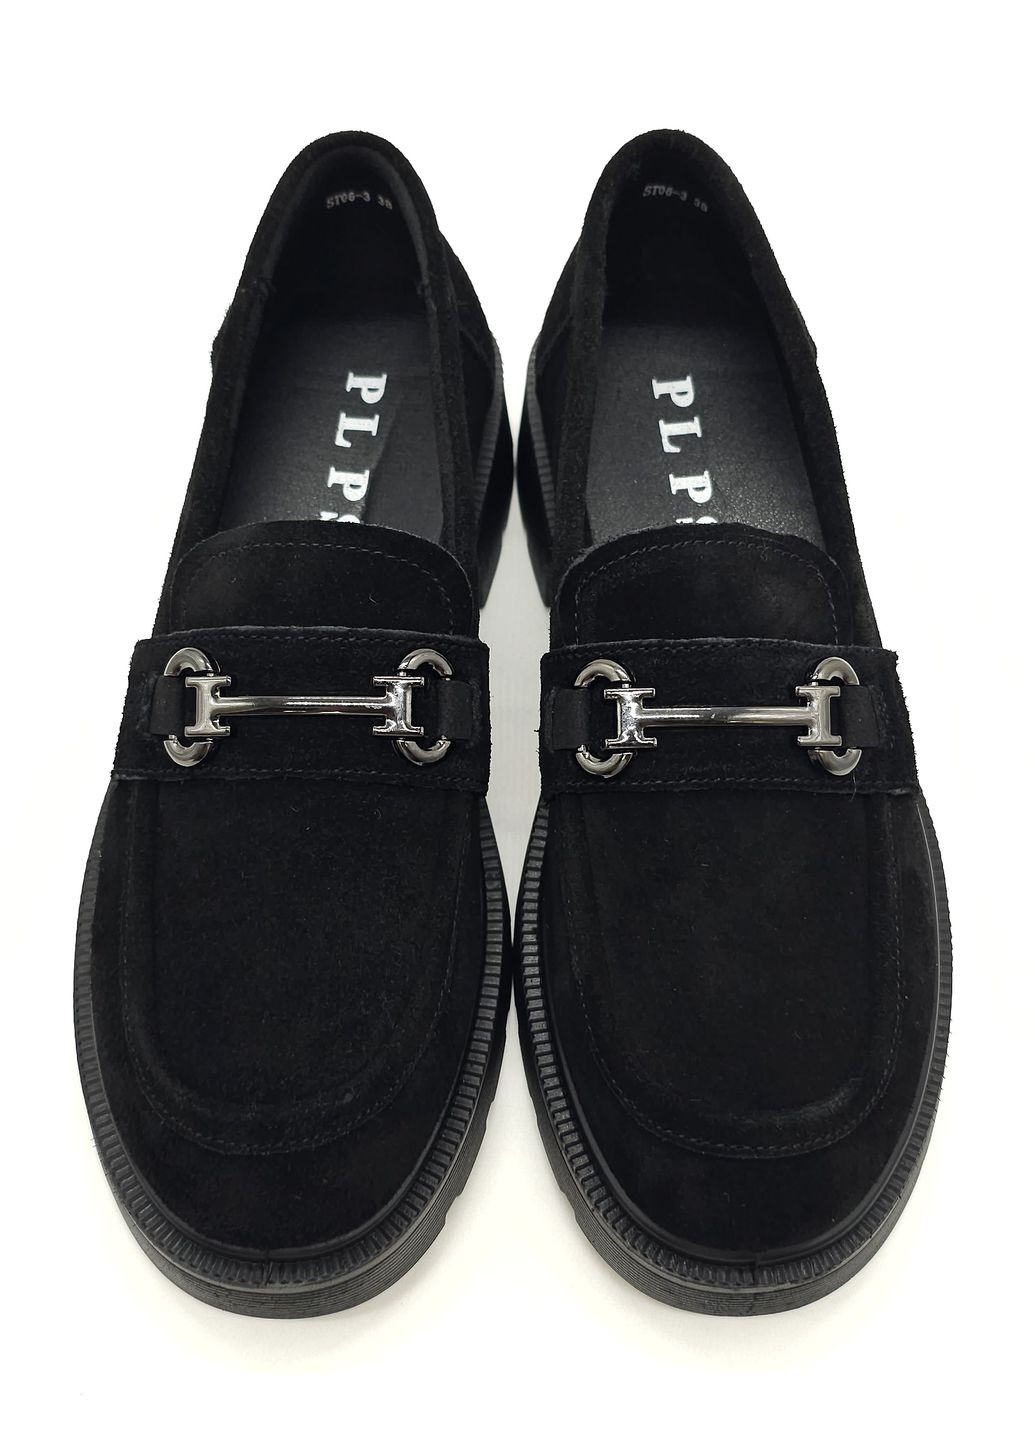 Жіночі туфлі чорні замшеві PP-19-5 23 см (р) PL PS (260379981)